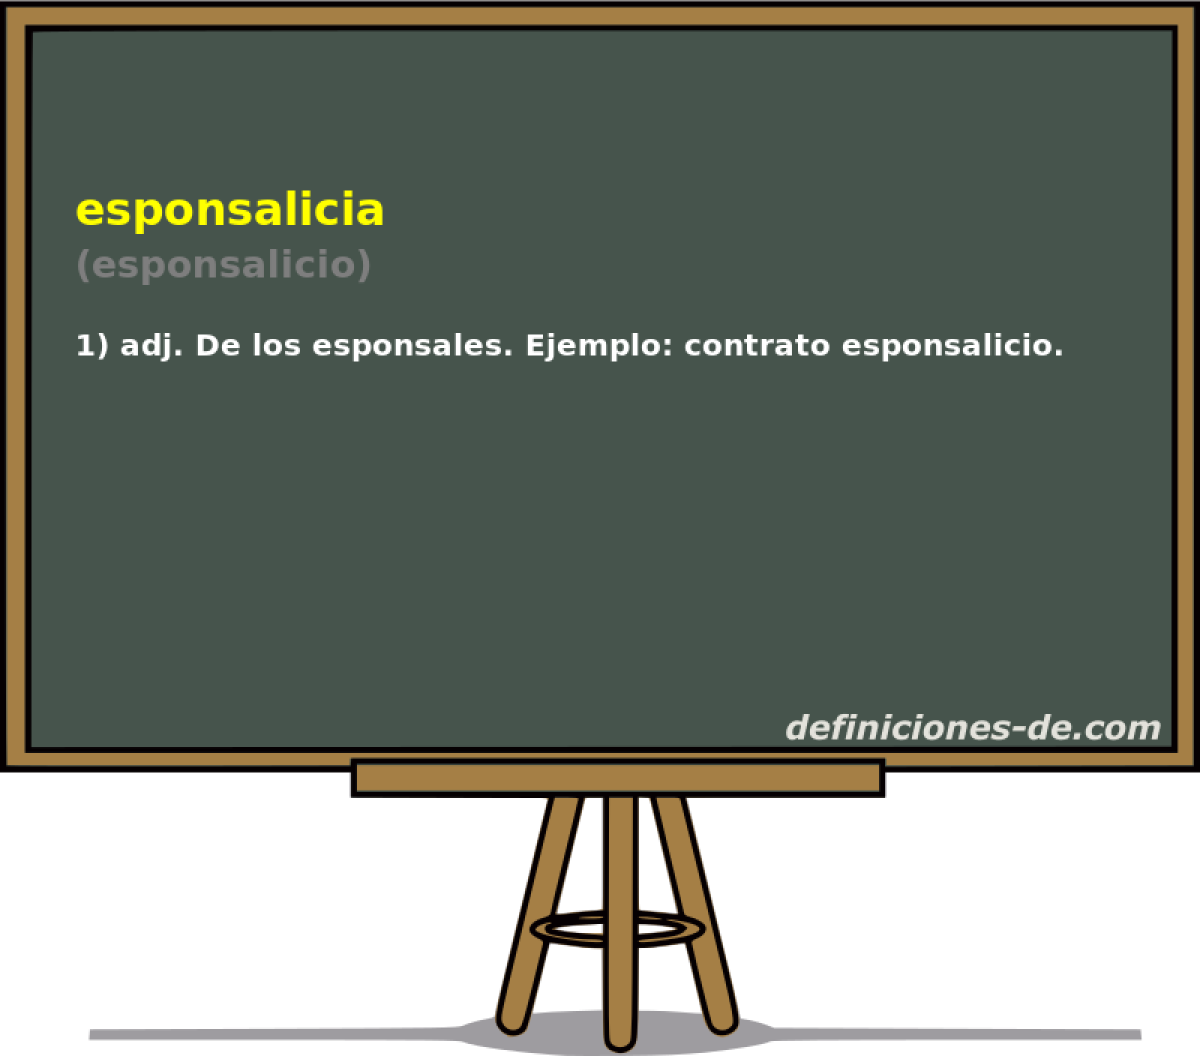 esponsalicia (esponsalicio)